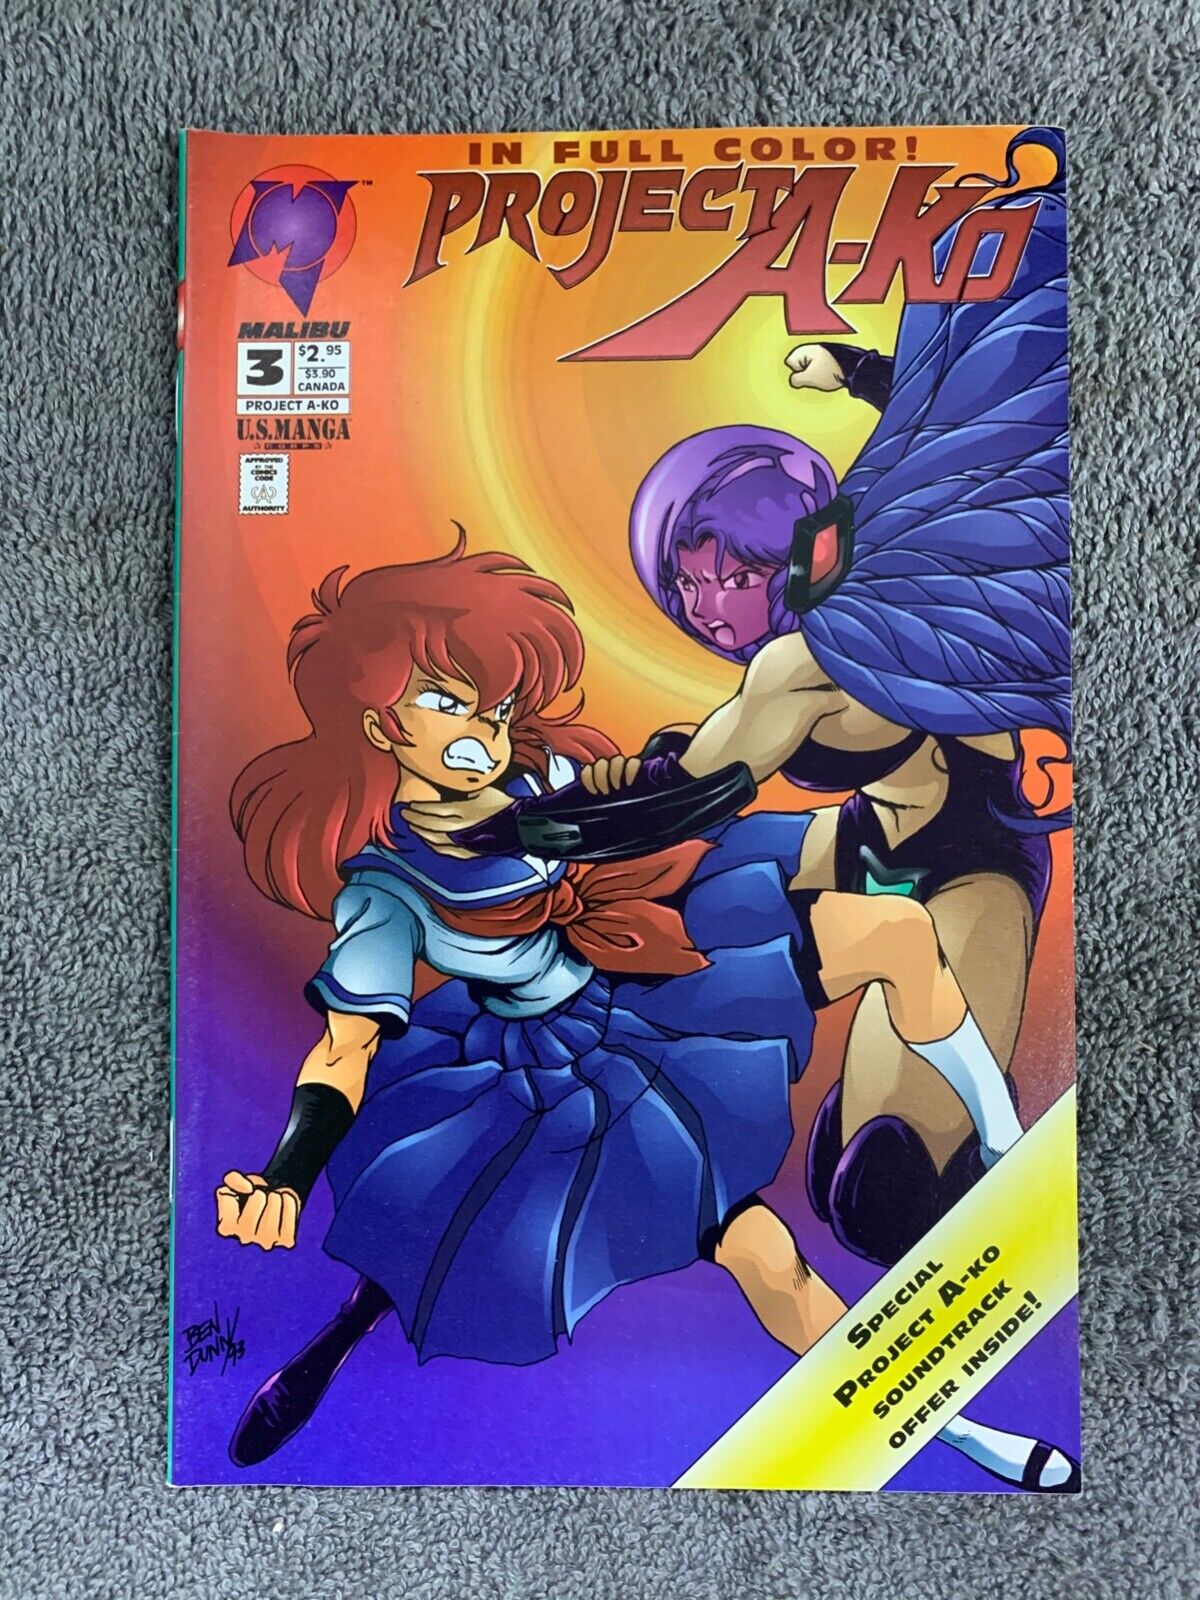 Project A-Ko #3 - Malibu Comics US Manga Core - May 1994